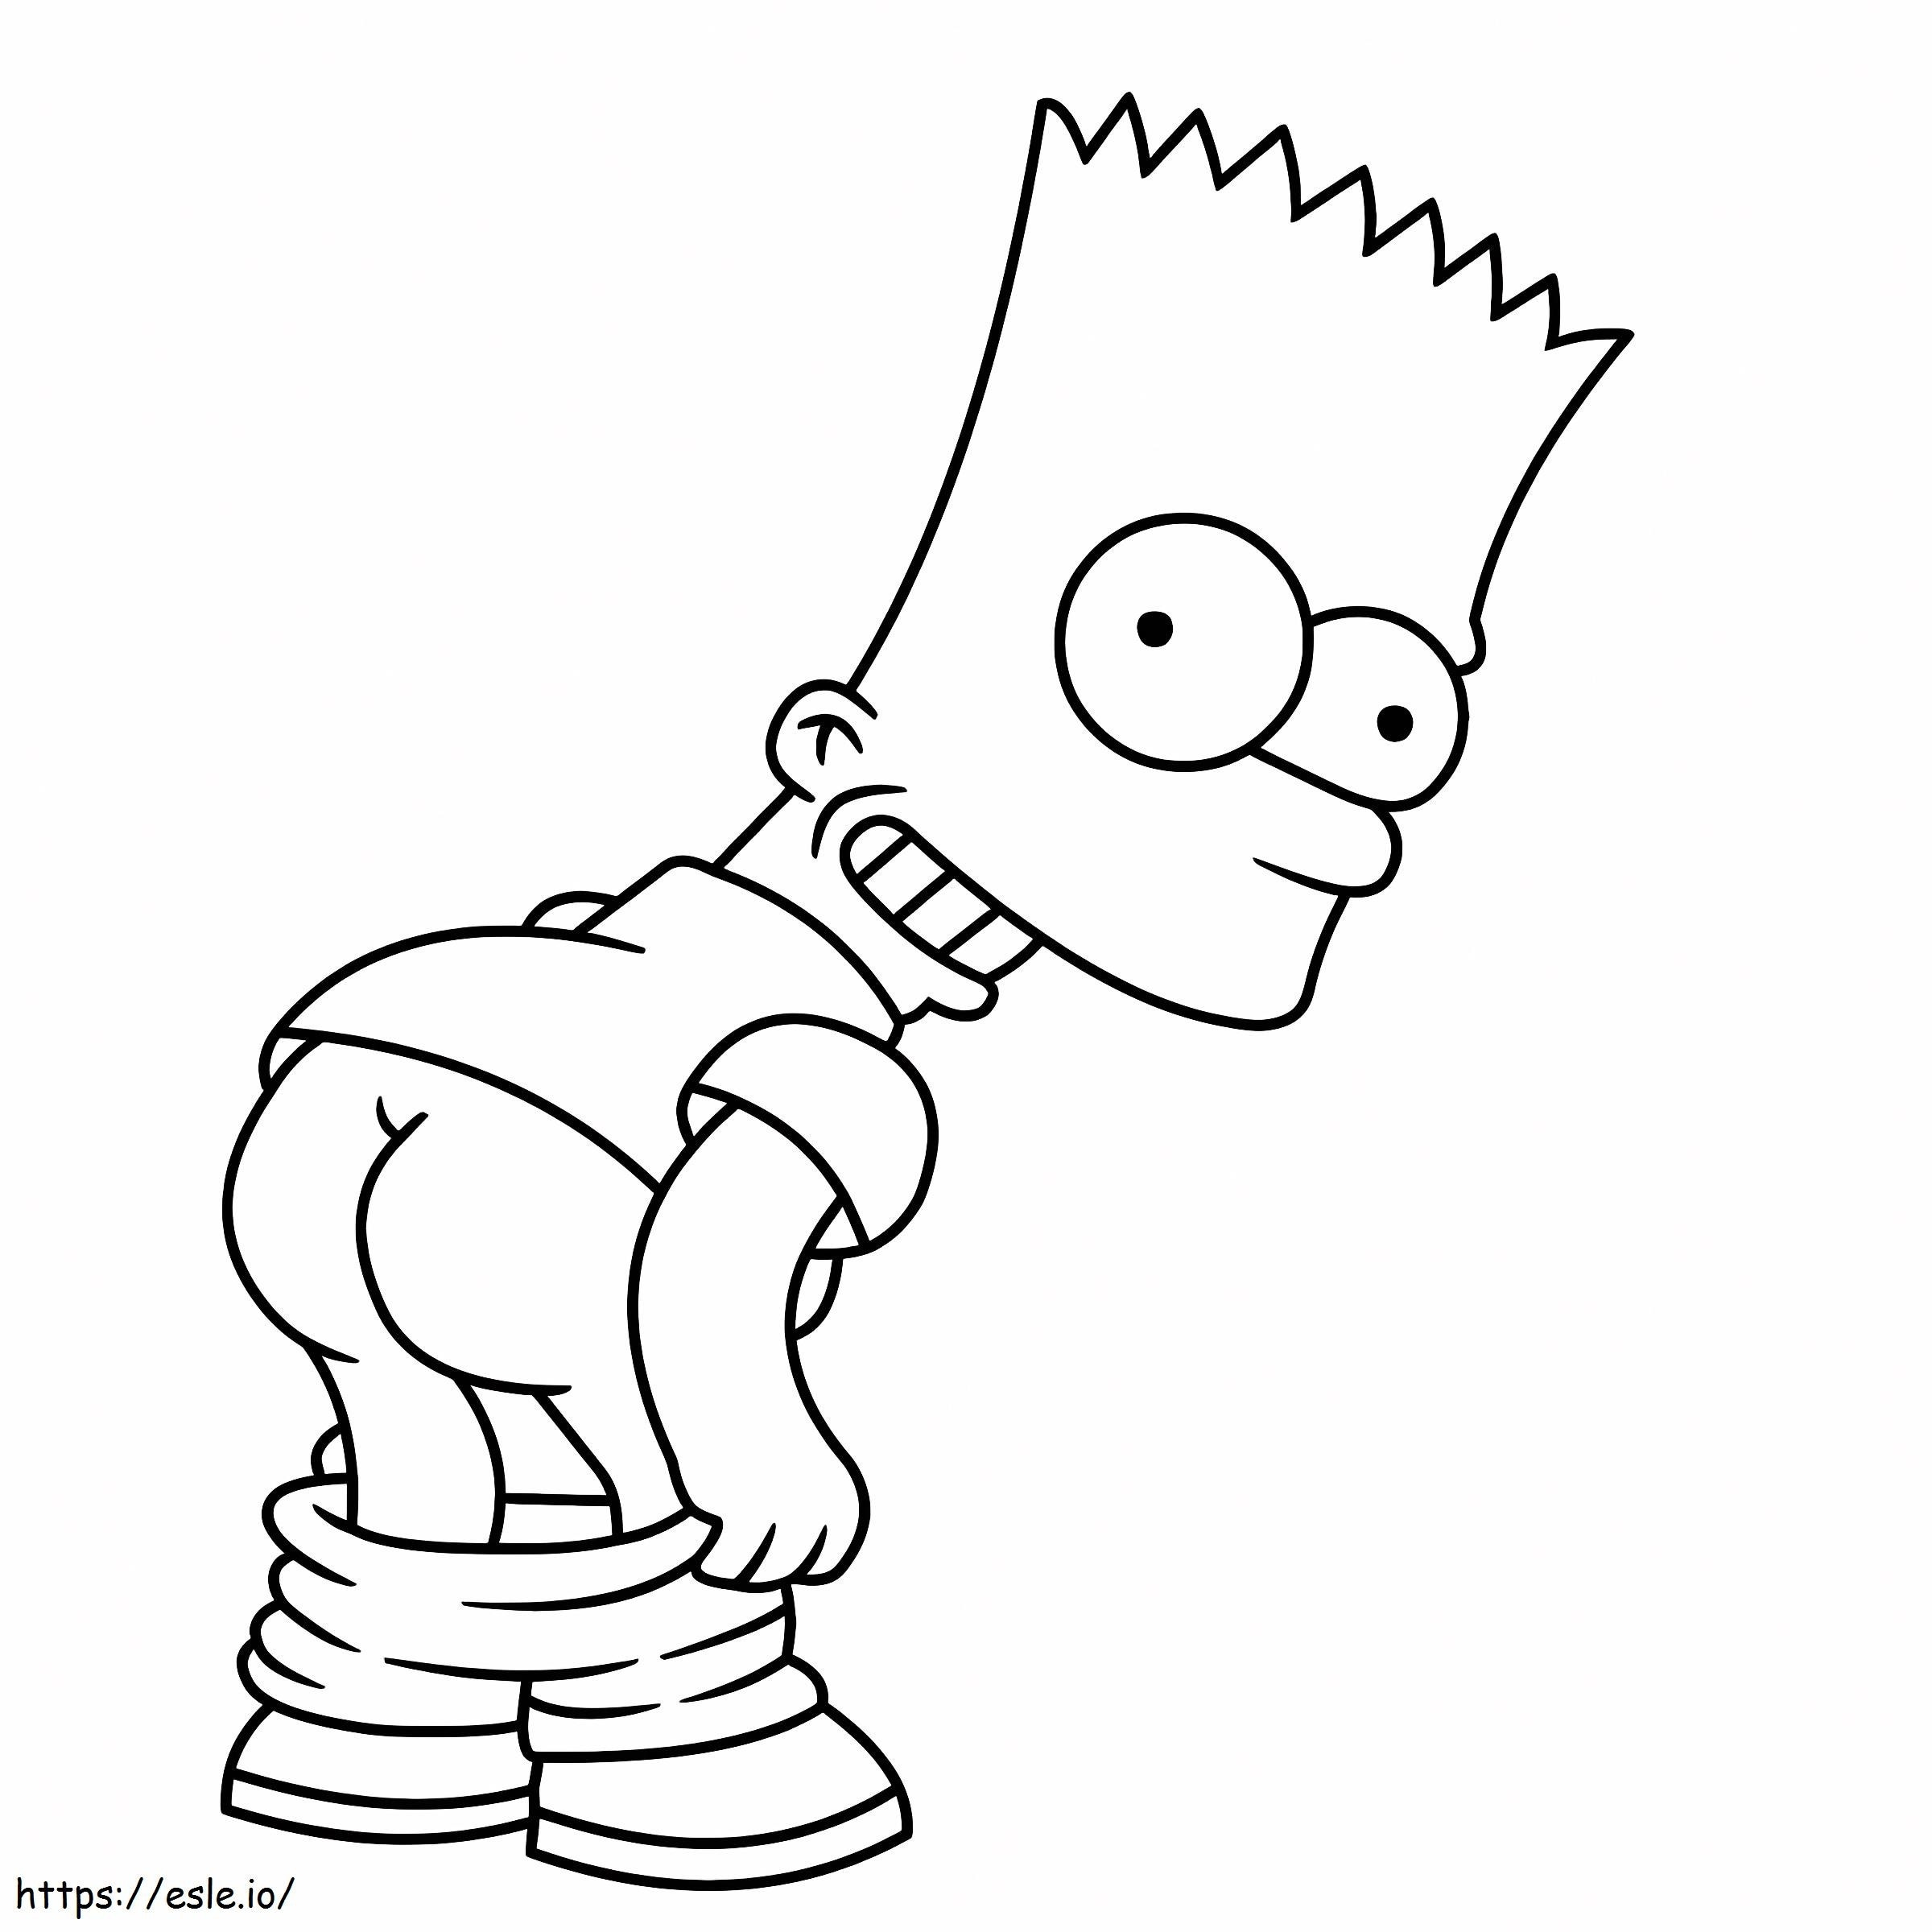 Bart Simpson es para colorear